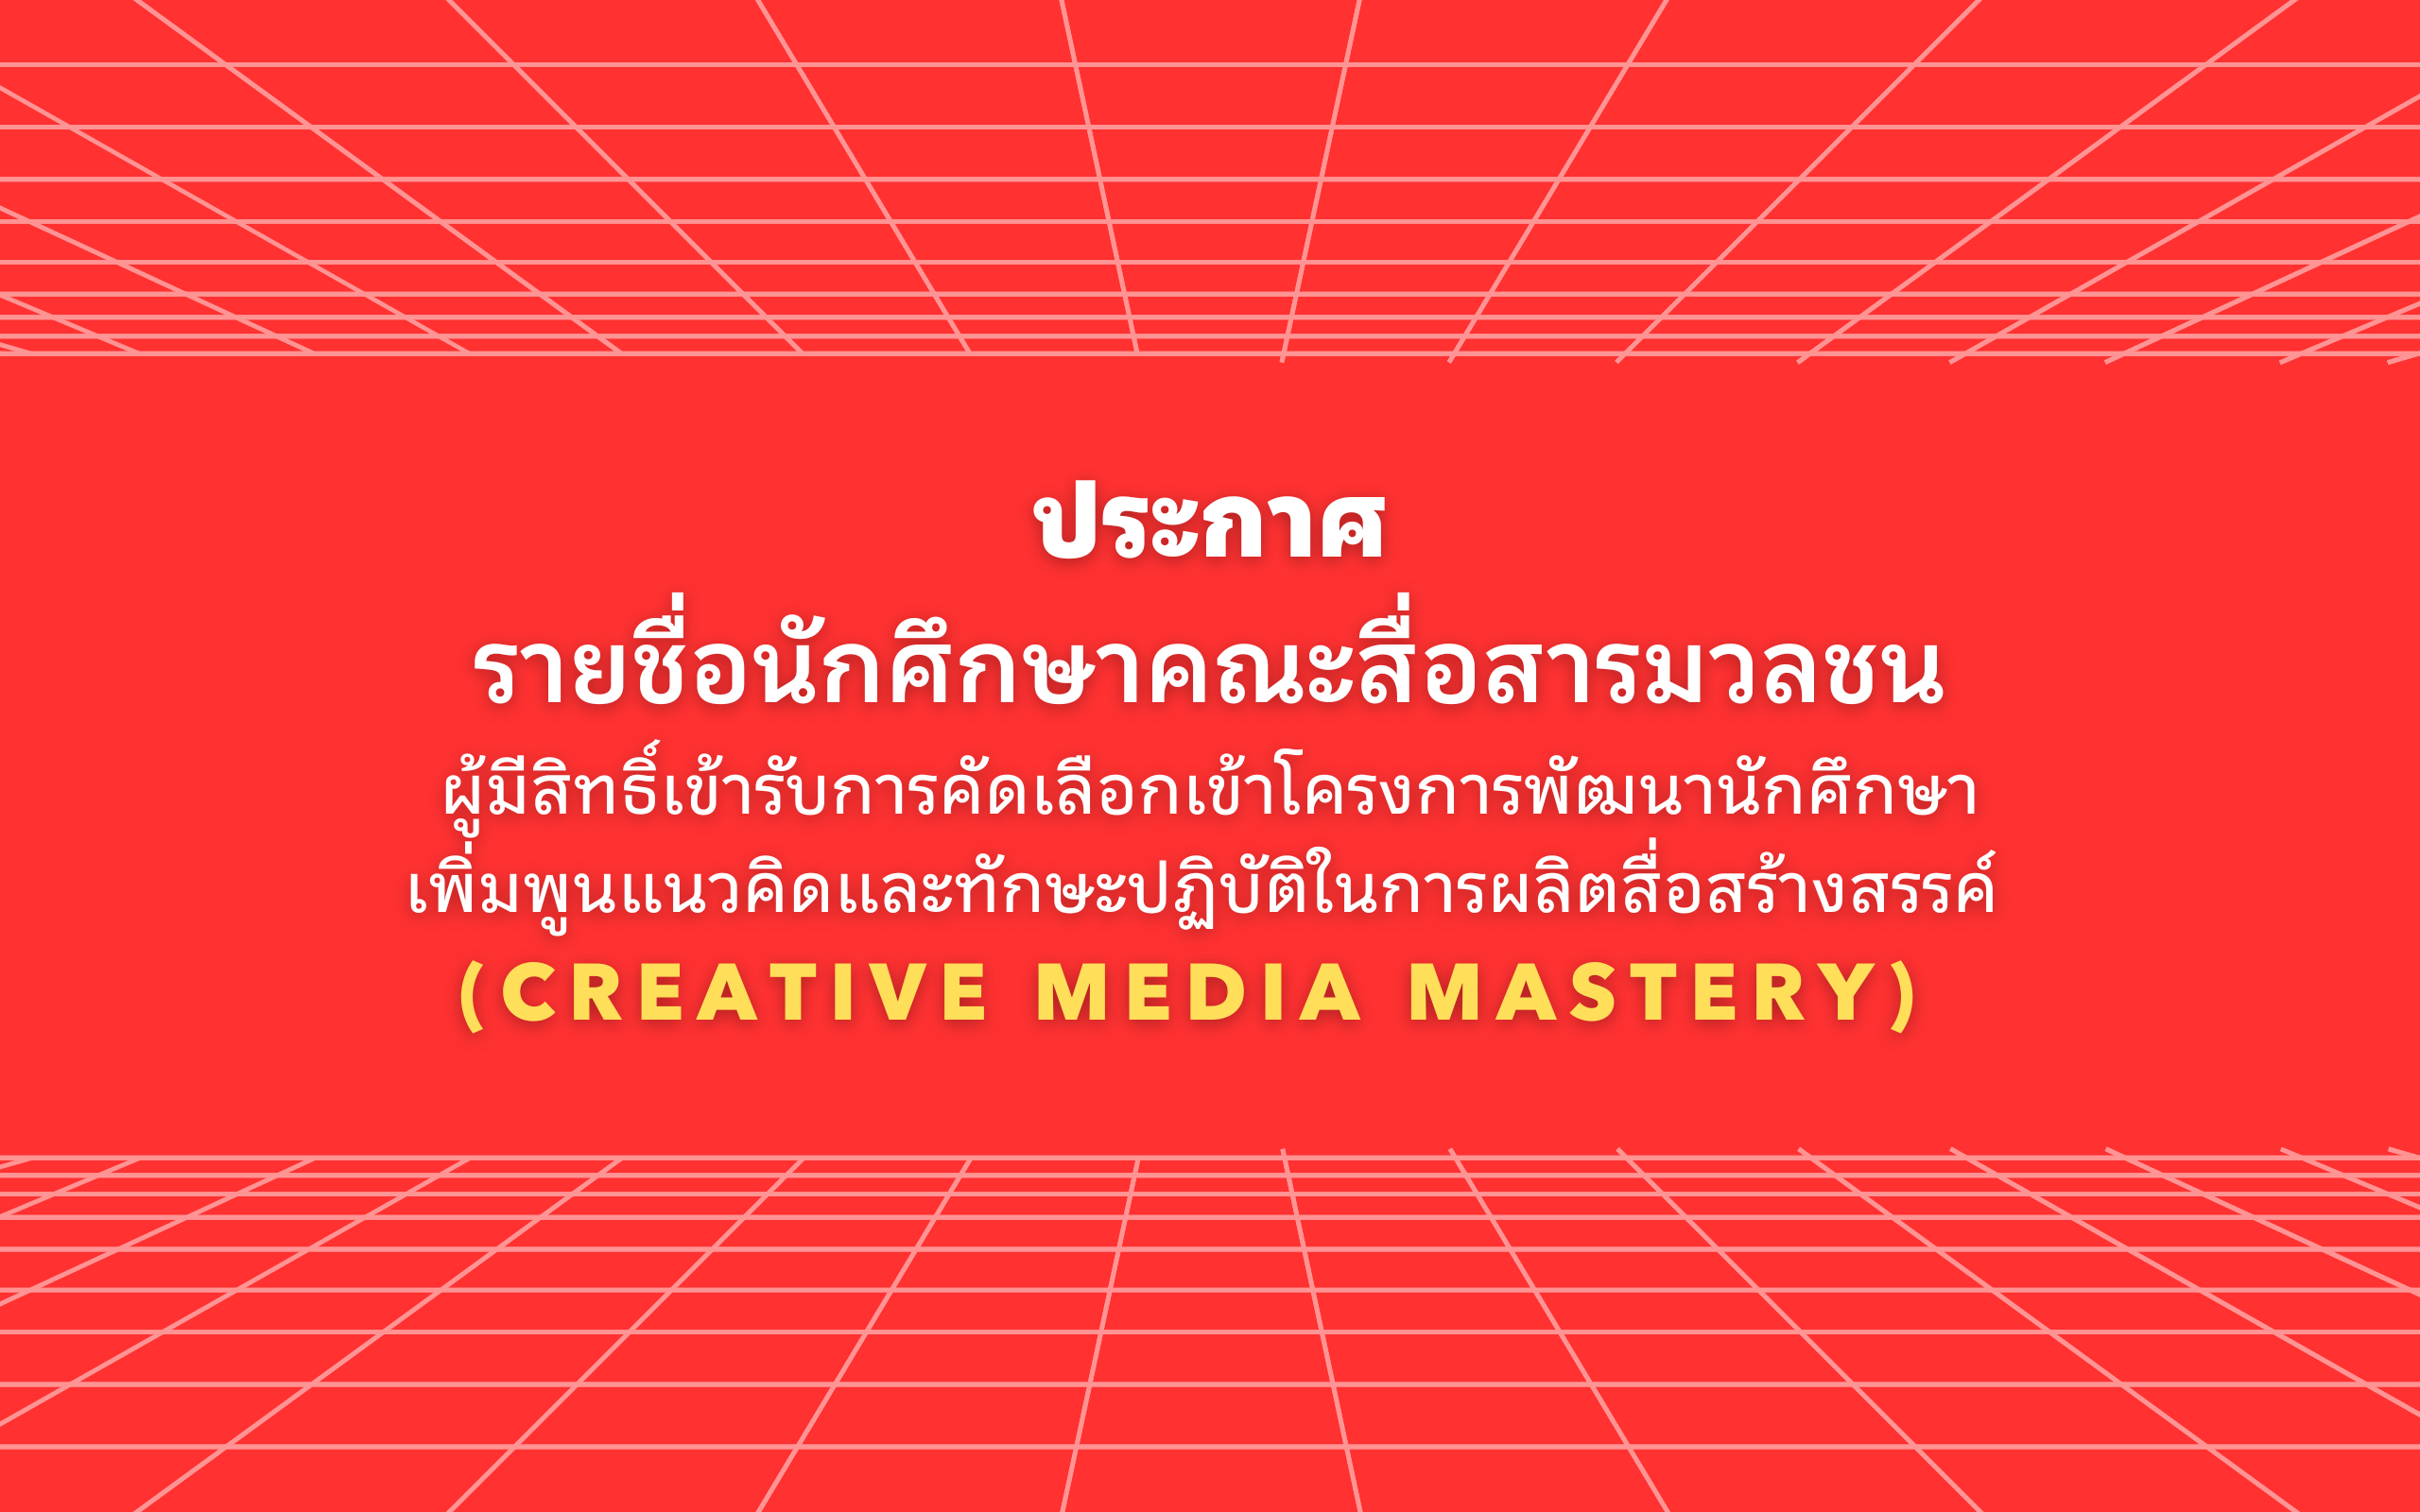 ประกาศรายชื่อนักศึกษาคณะสื่อสารมวลชน ผู้มีสิทธิ์เข้ารับการคัดเลือกให้เข้าร่วมโครงการพัฒนานักศึกษาเพิ่มพูนแนวคิดและทักษะปฏิบัติในการผลิตสื่อสร้างสรรค์ (Creative Media Mastery)